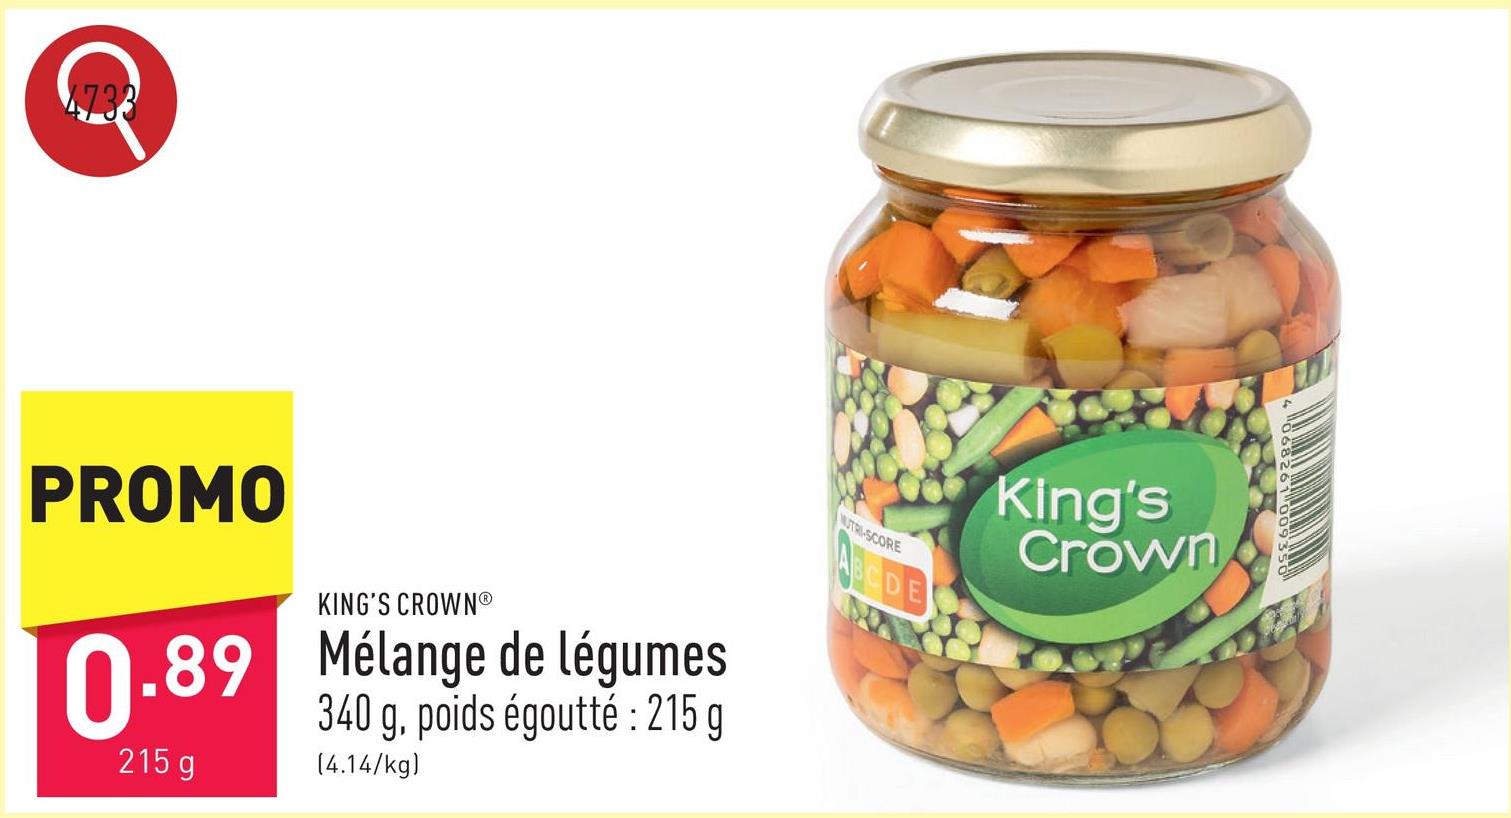 Mélange de légumes carottes, petits pois, haricots princesse, haricots blancs et navets, 340 g, poids égoutté : 215 g